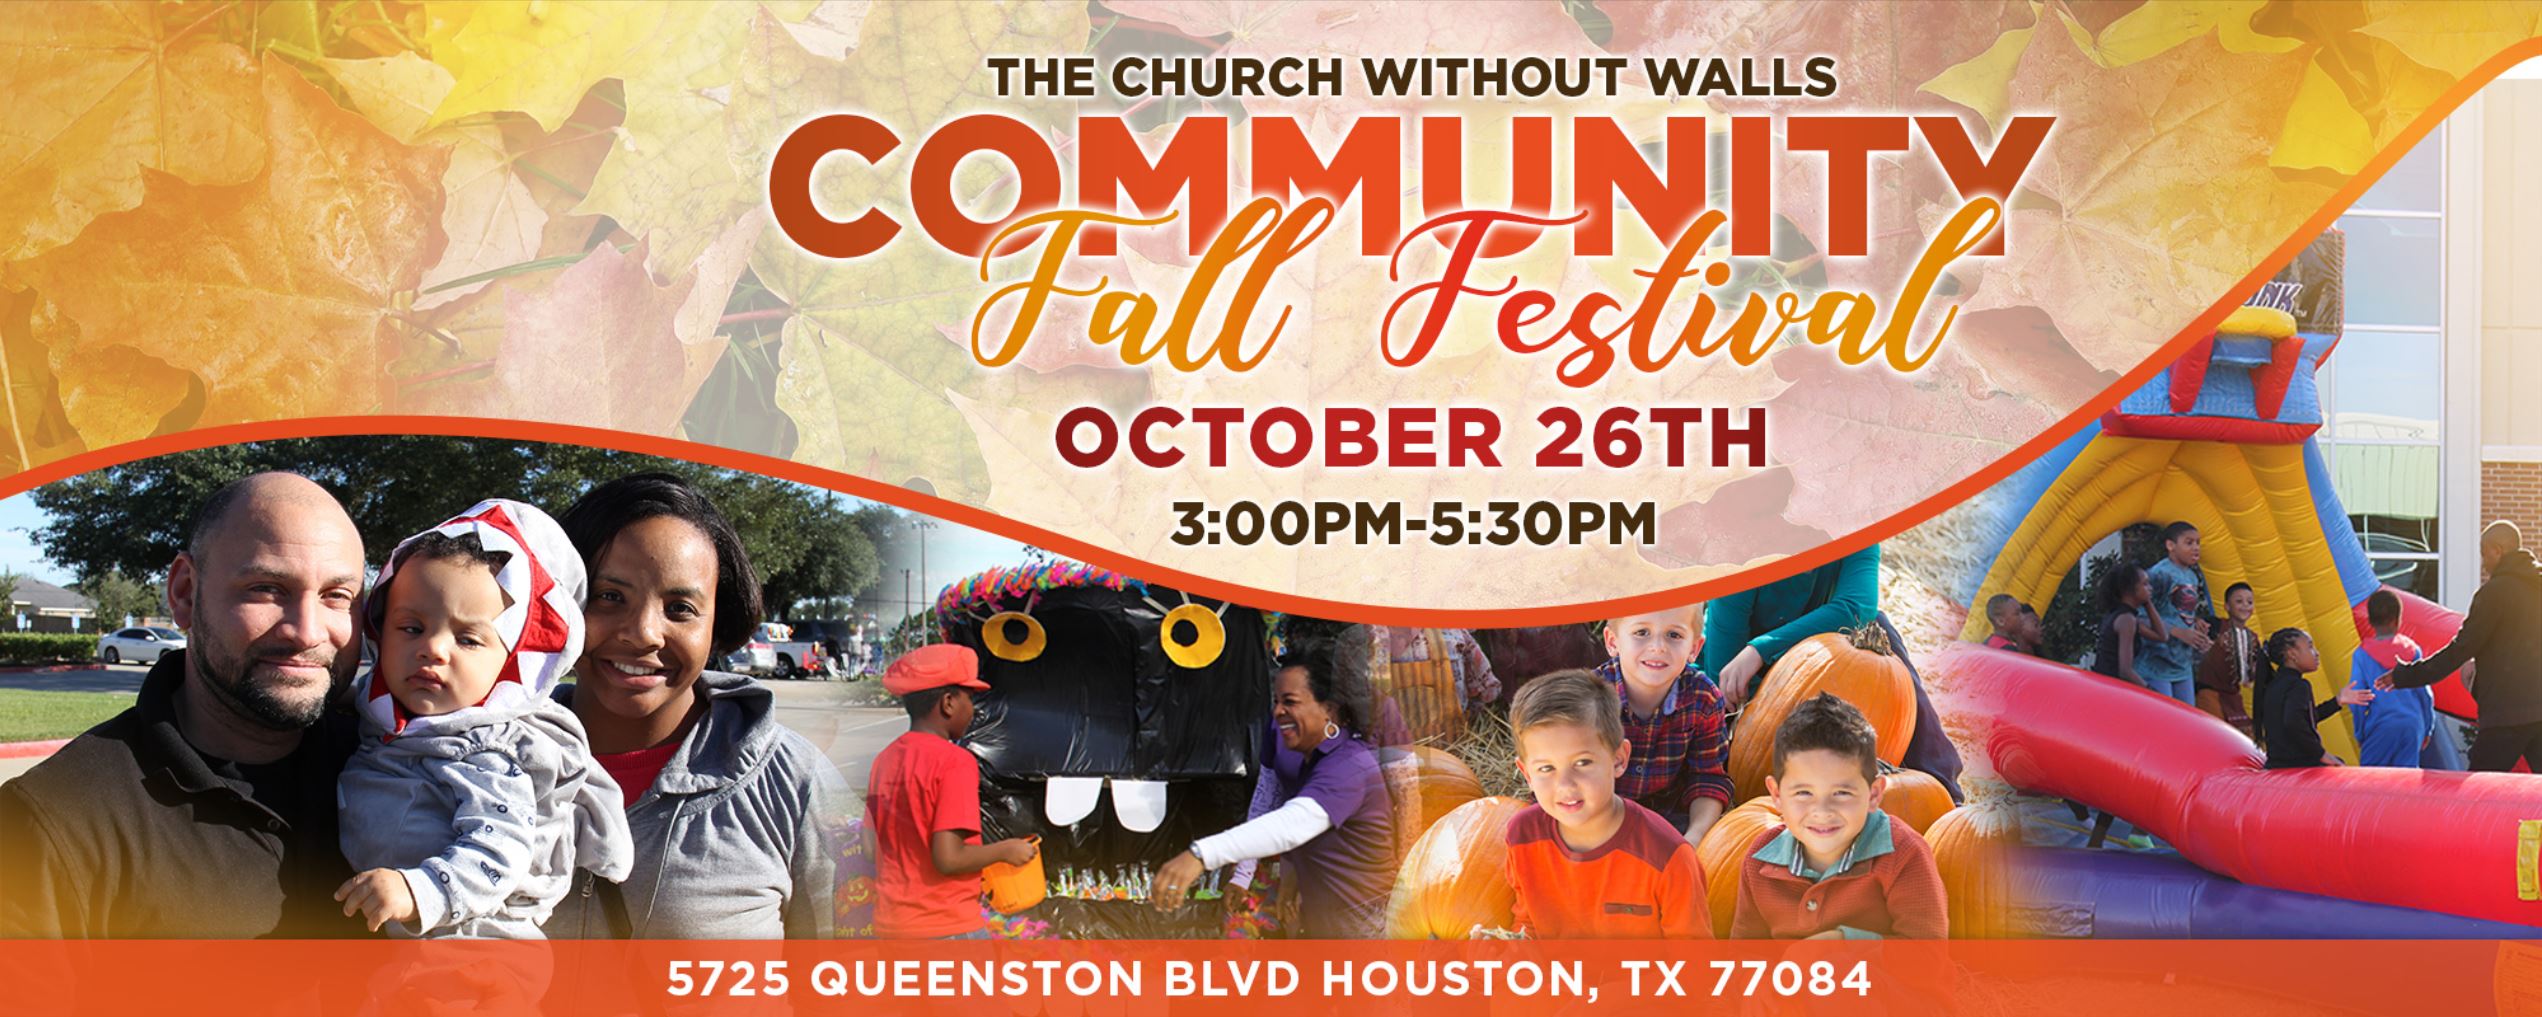 Community Fall Festival - Volunteer Sign-Up